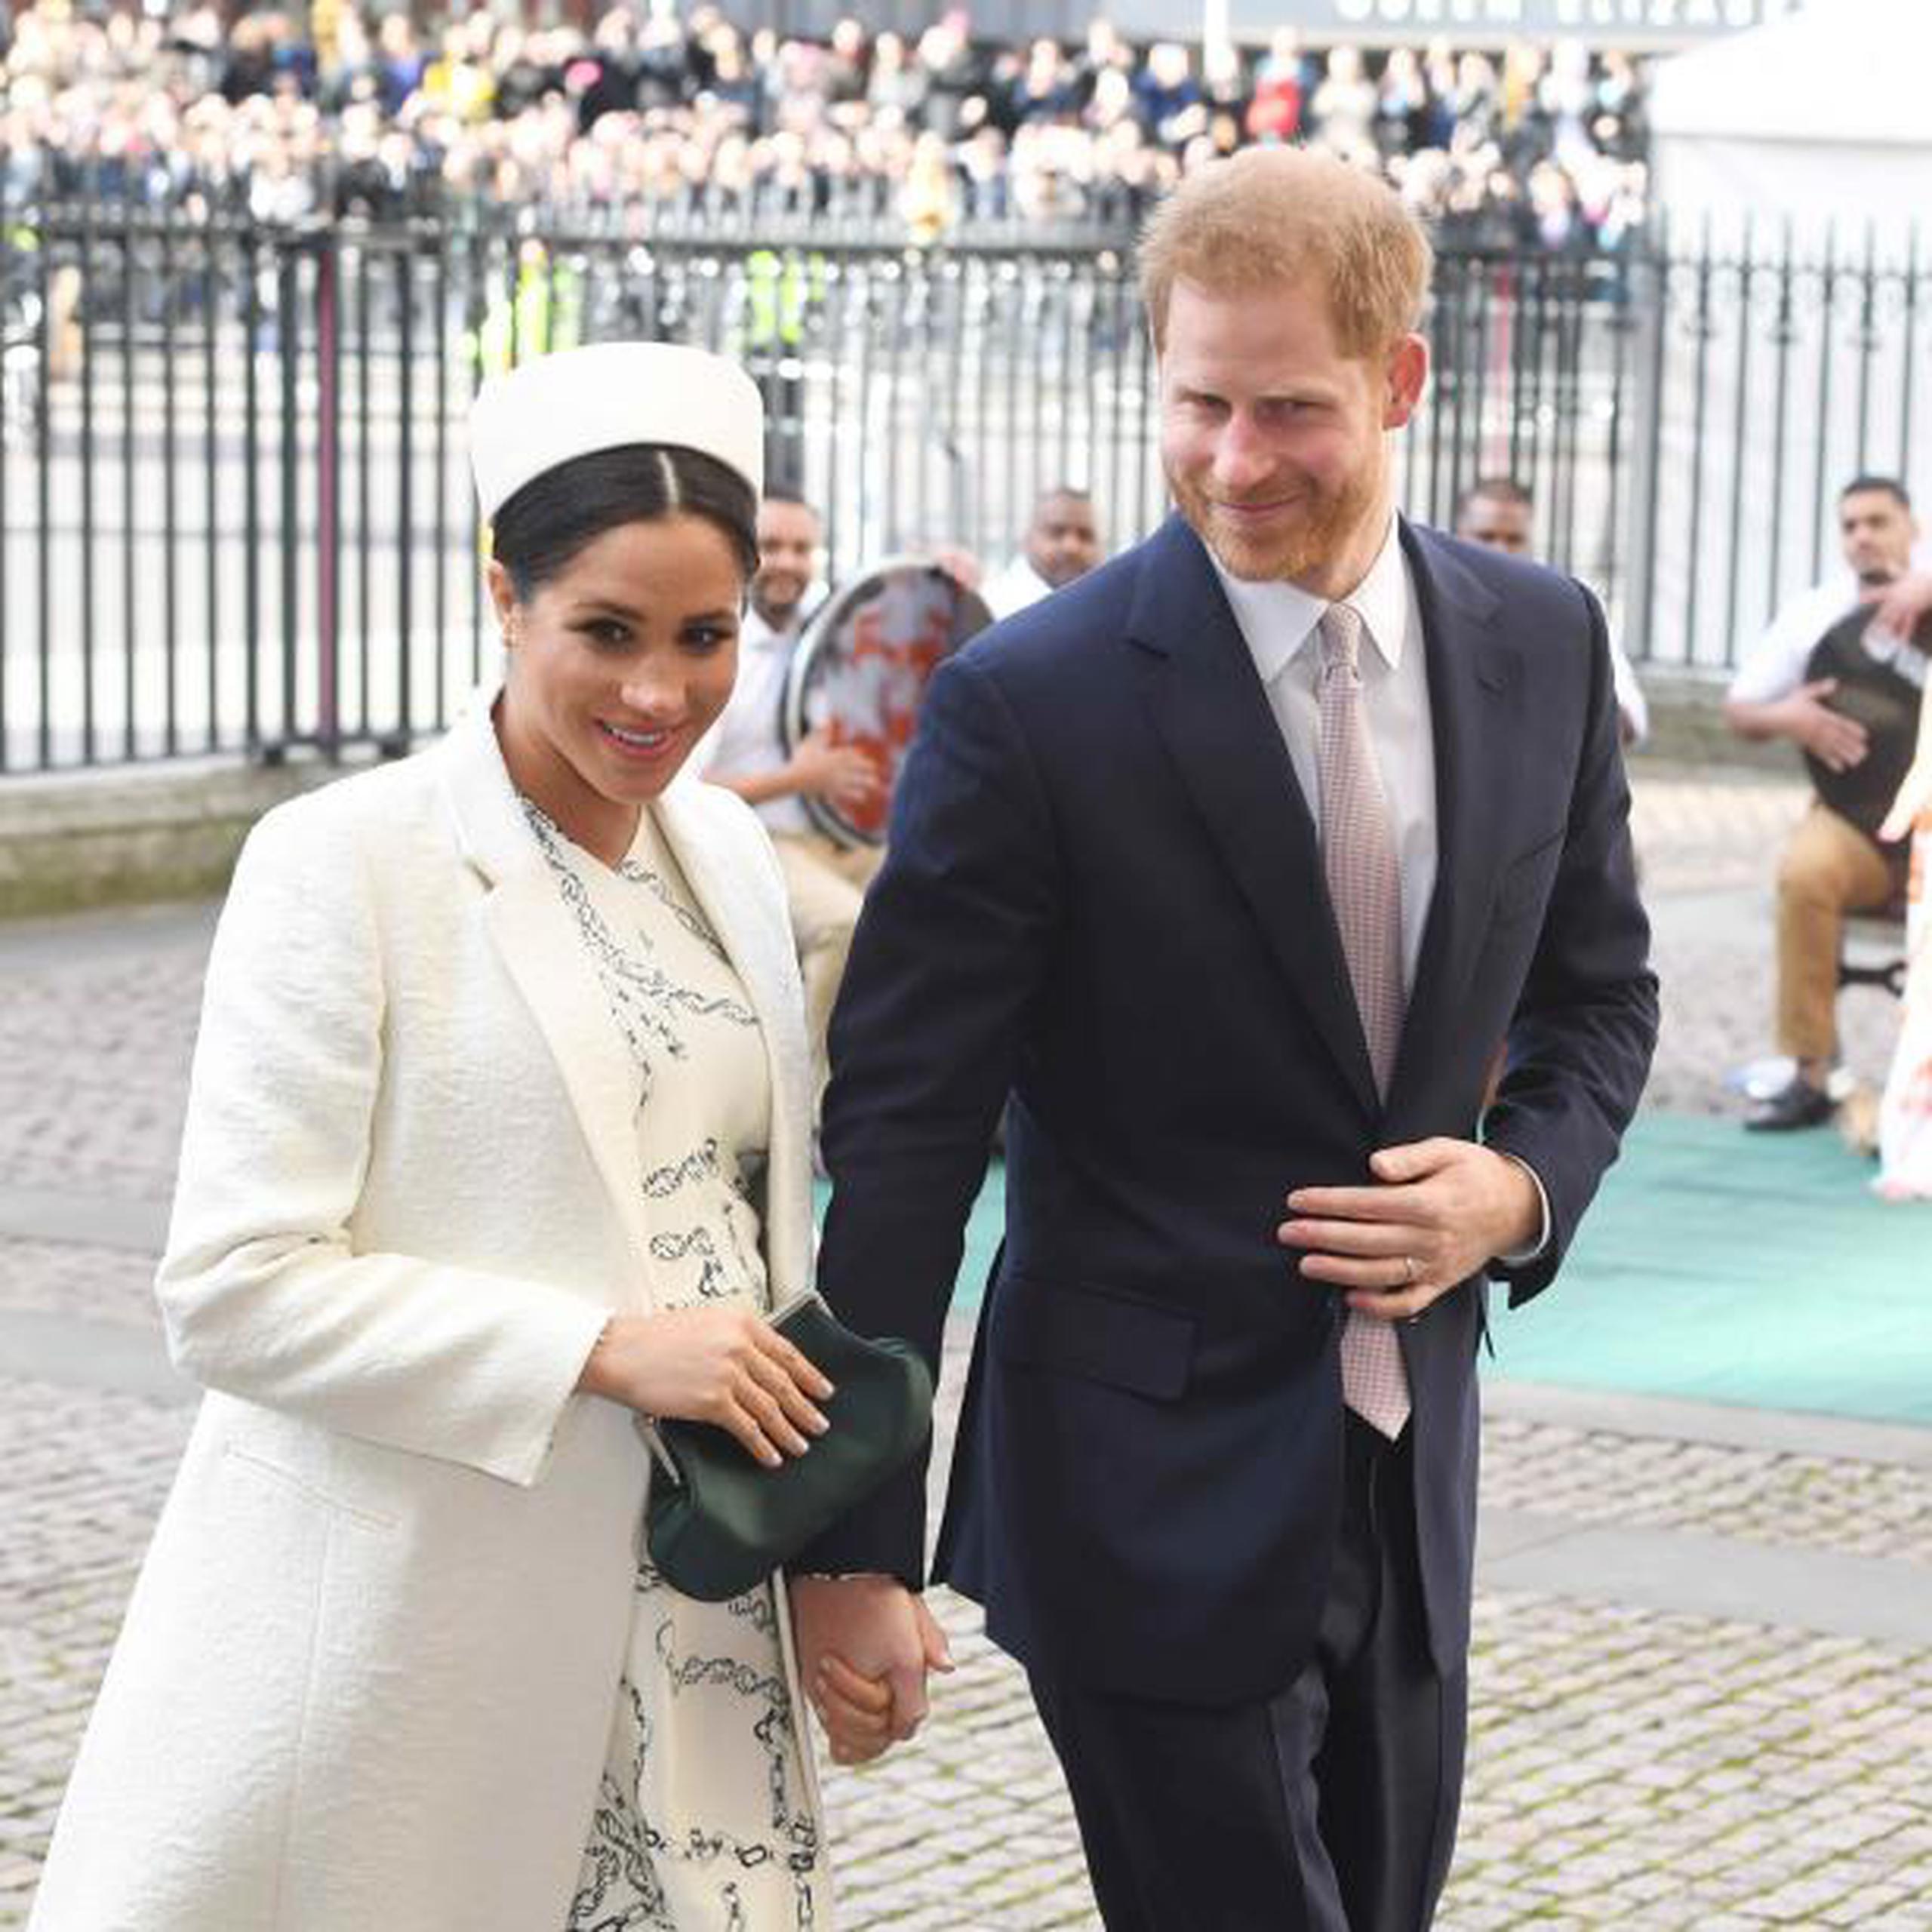 Los duques de Sussex, el príncipe Enrique de Inglaterra y la estadounidense Meghan Markle, a su llegada a un acto con motivo del Día de la Mancomunidad británica de Naciones este lunes en la abadía de Westminster de Londres.   (EFE/ Facundo Arrizabalaga)